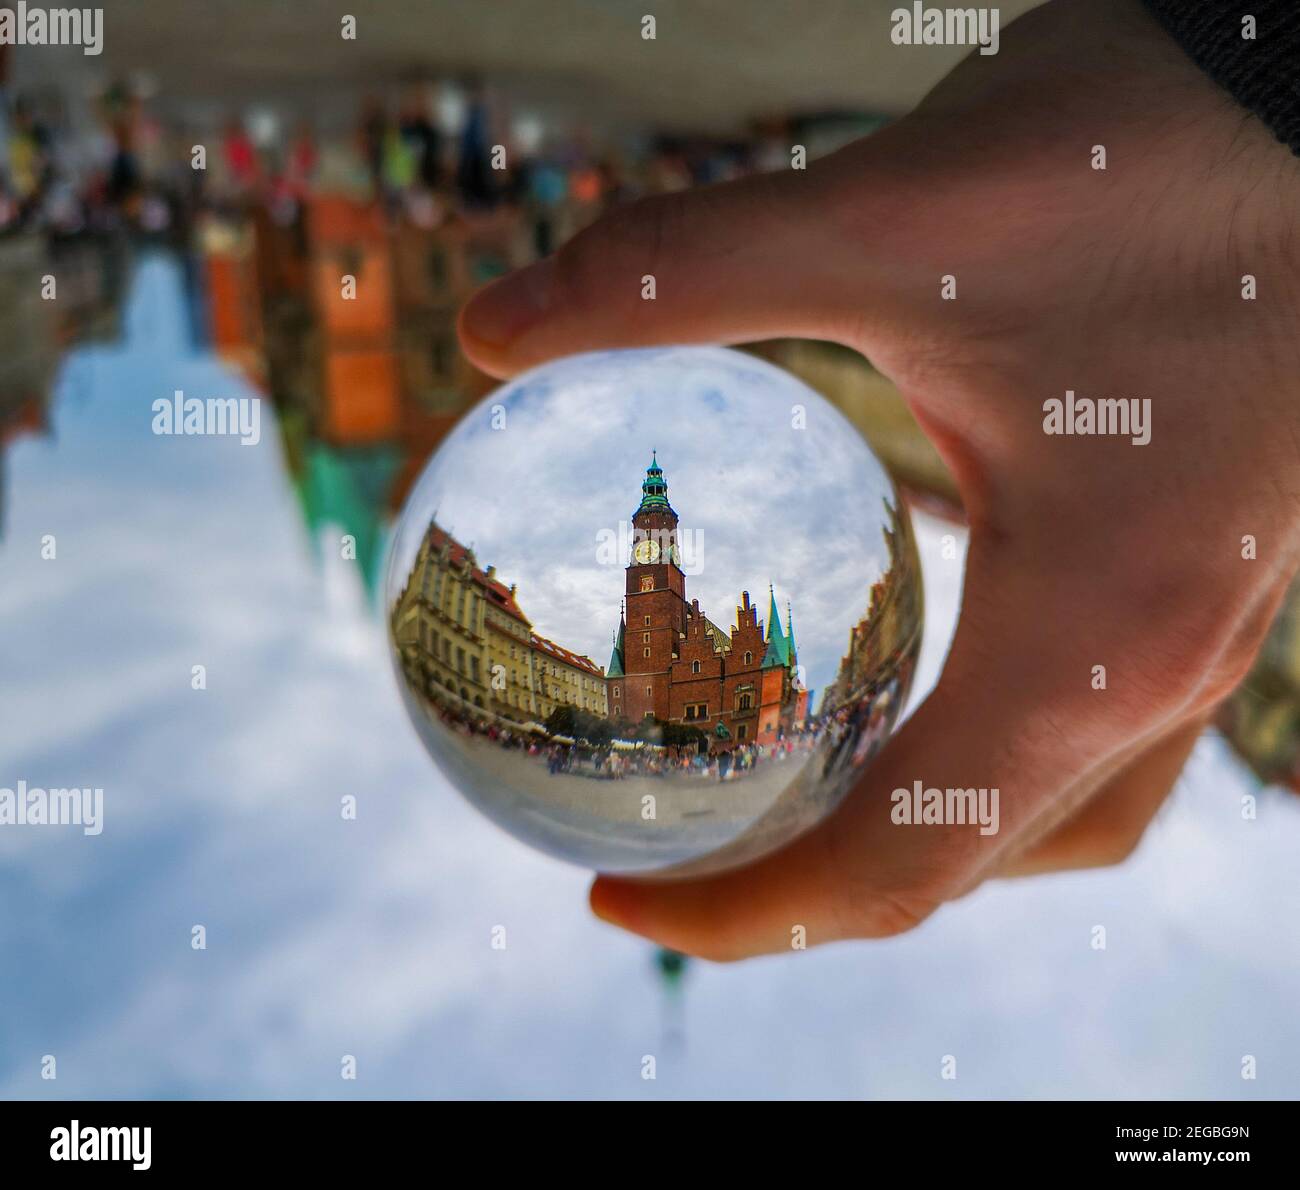 Wroclaw Luglio 19 2019 Wroclaw Town Hall torre riflessa in lensball cristallo vetroso Foto Stock